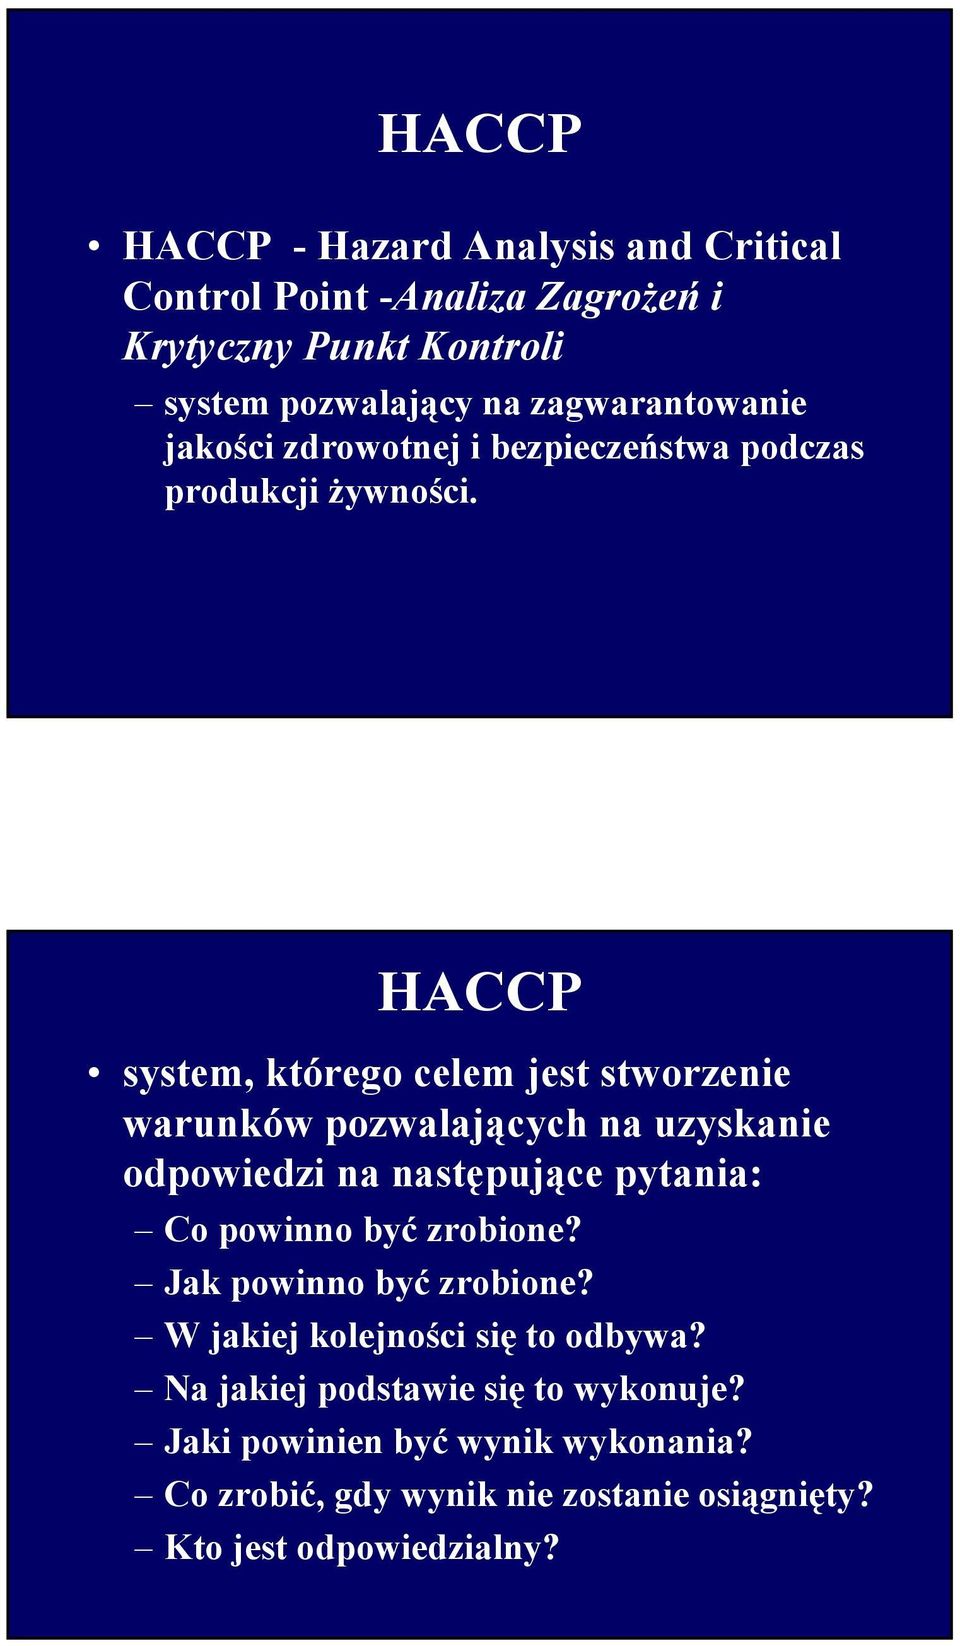 HACCP system, którego celem jest stworzenie warunków pozwalających na uzyskanie odpowiedzi na następujące pytania: Co powinno być